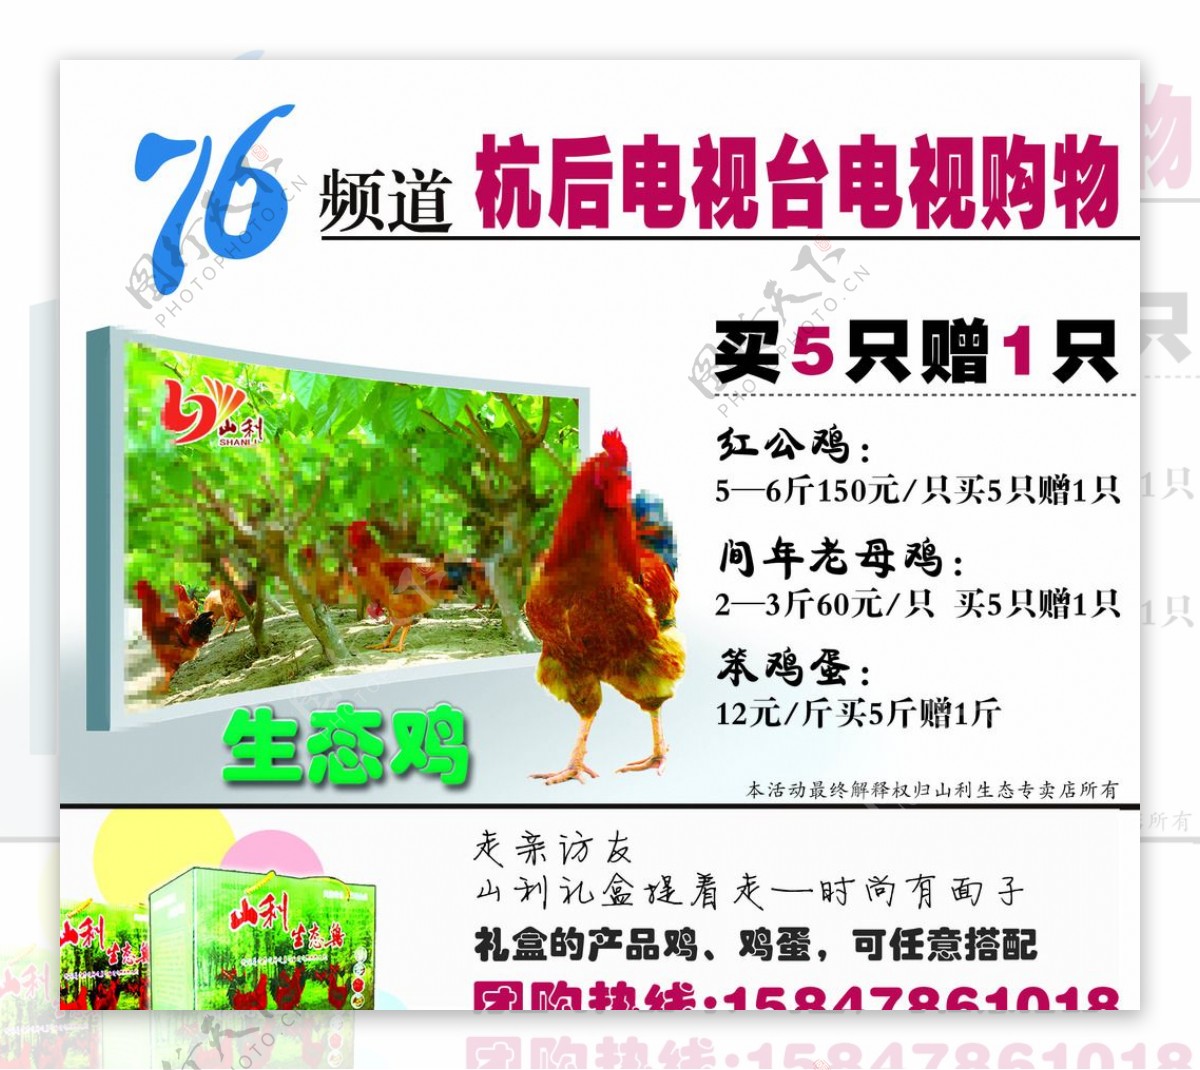 传统自由放养家禽农场的鸡 高清摄影大图-千库网